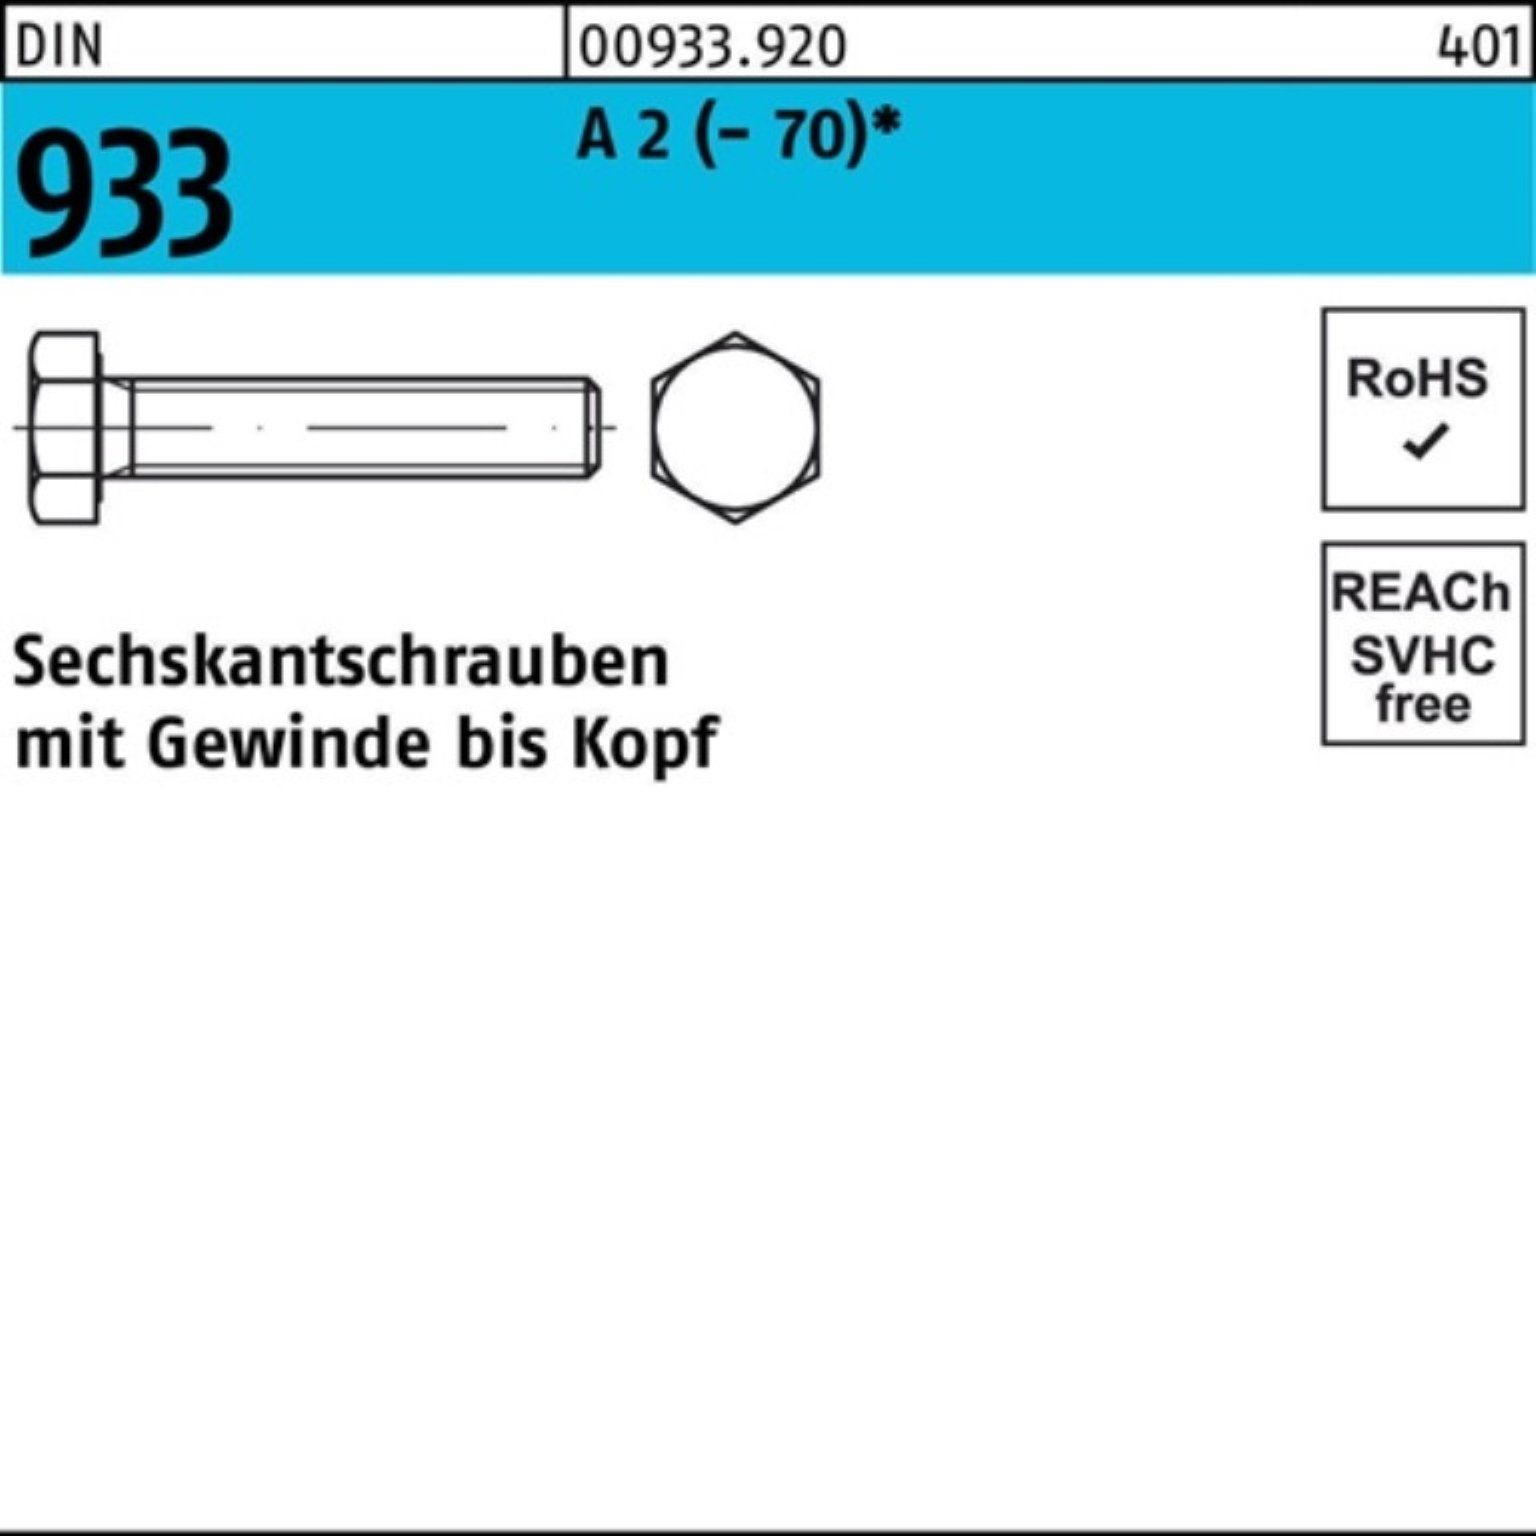 DIN Sechskantschraube Pack 100er Reyher 2 (70) 933 M4x Sechskantschraube D VG A 100 22 Stück